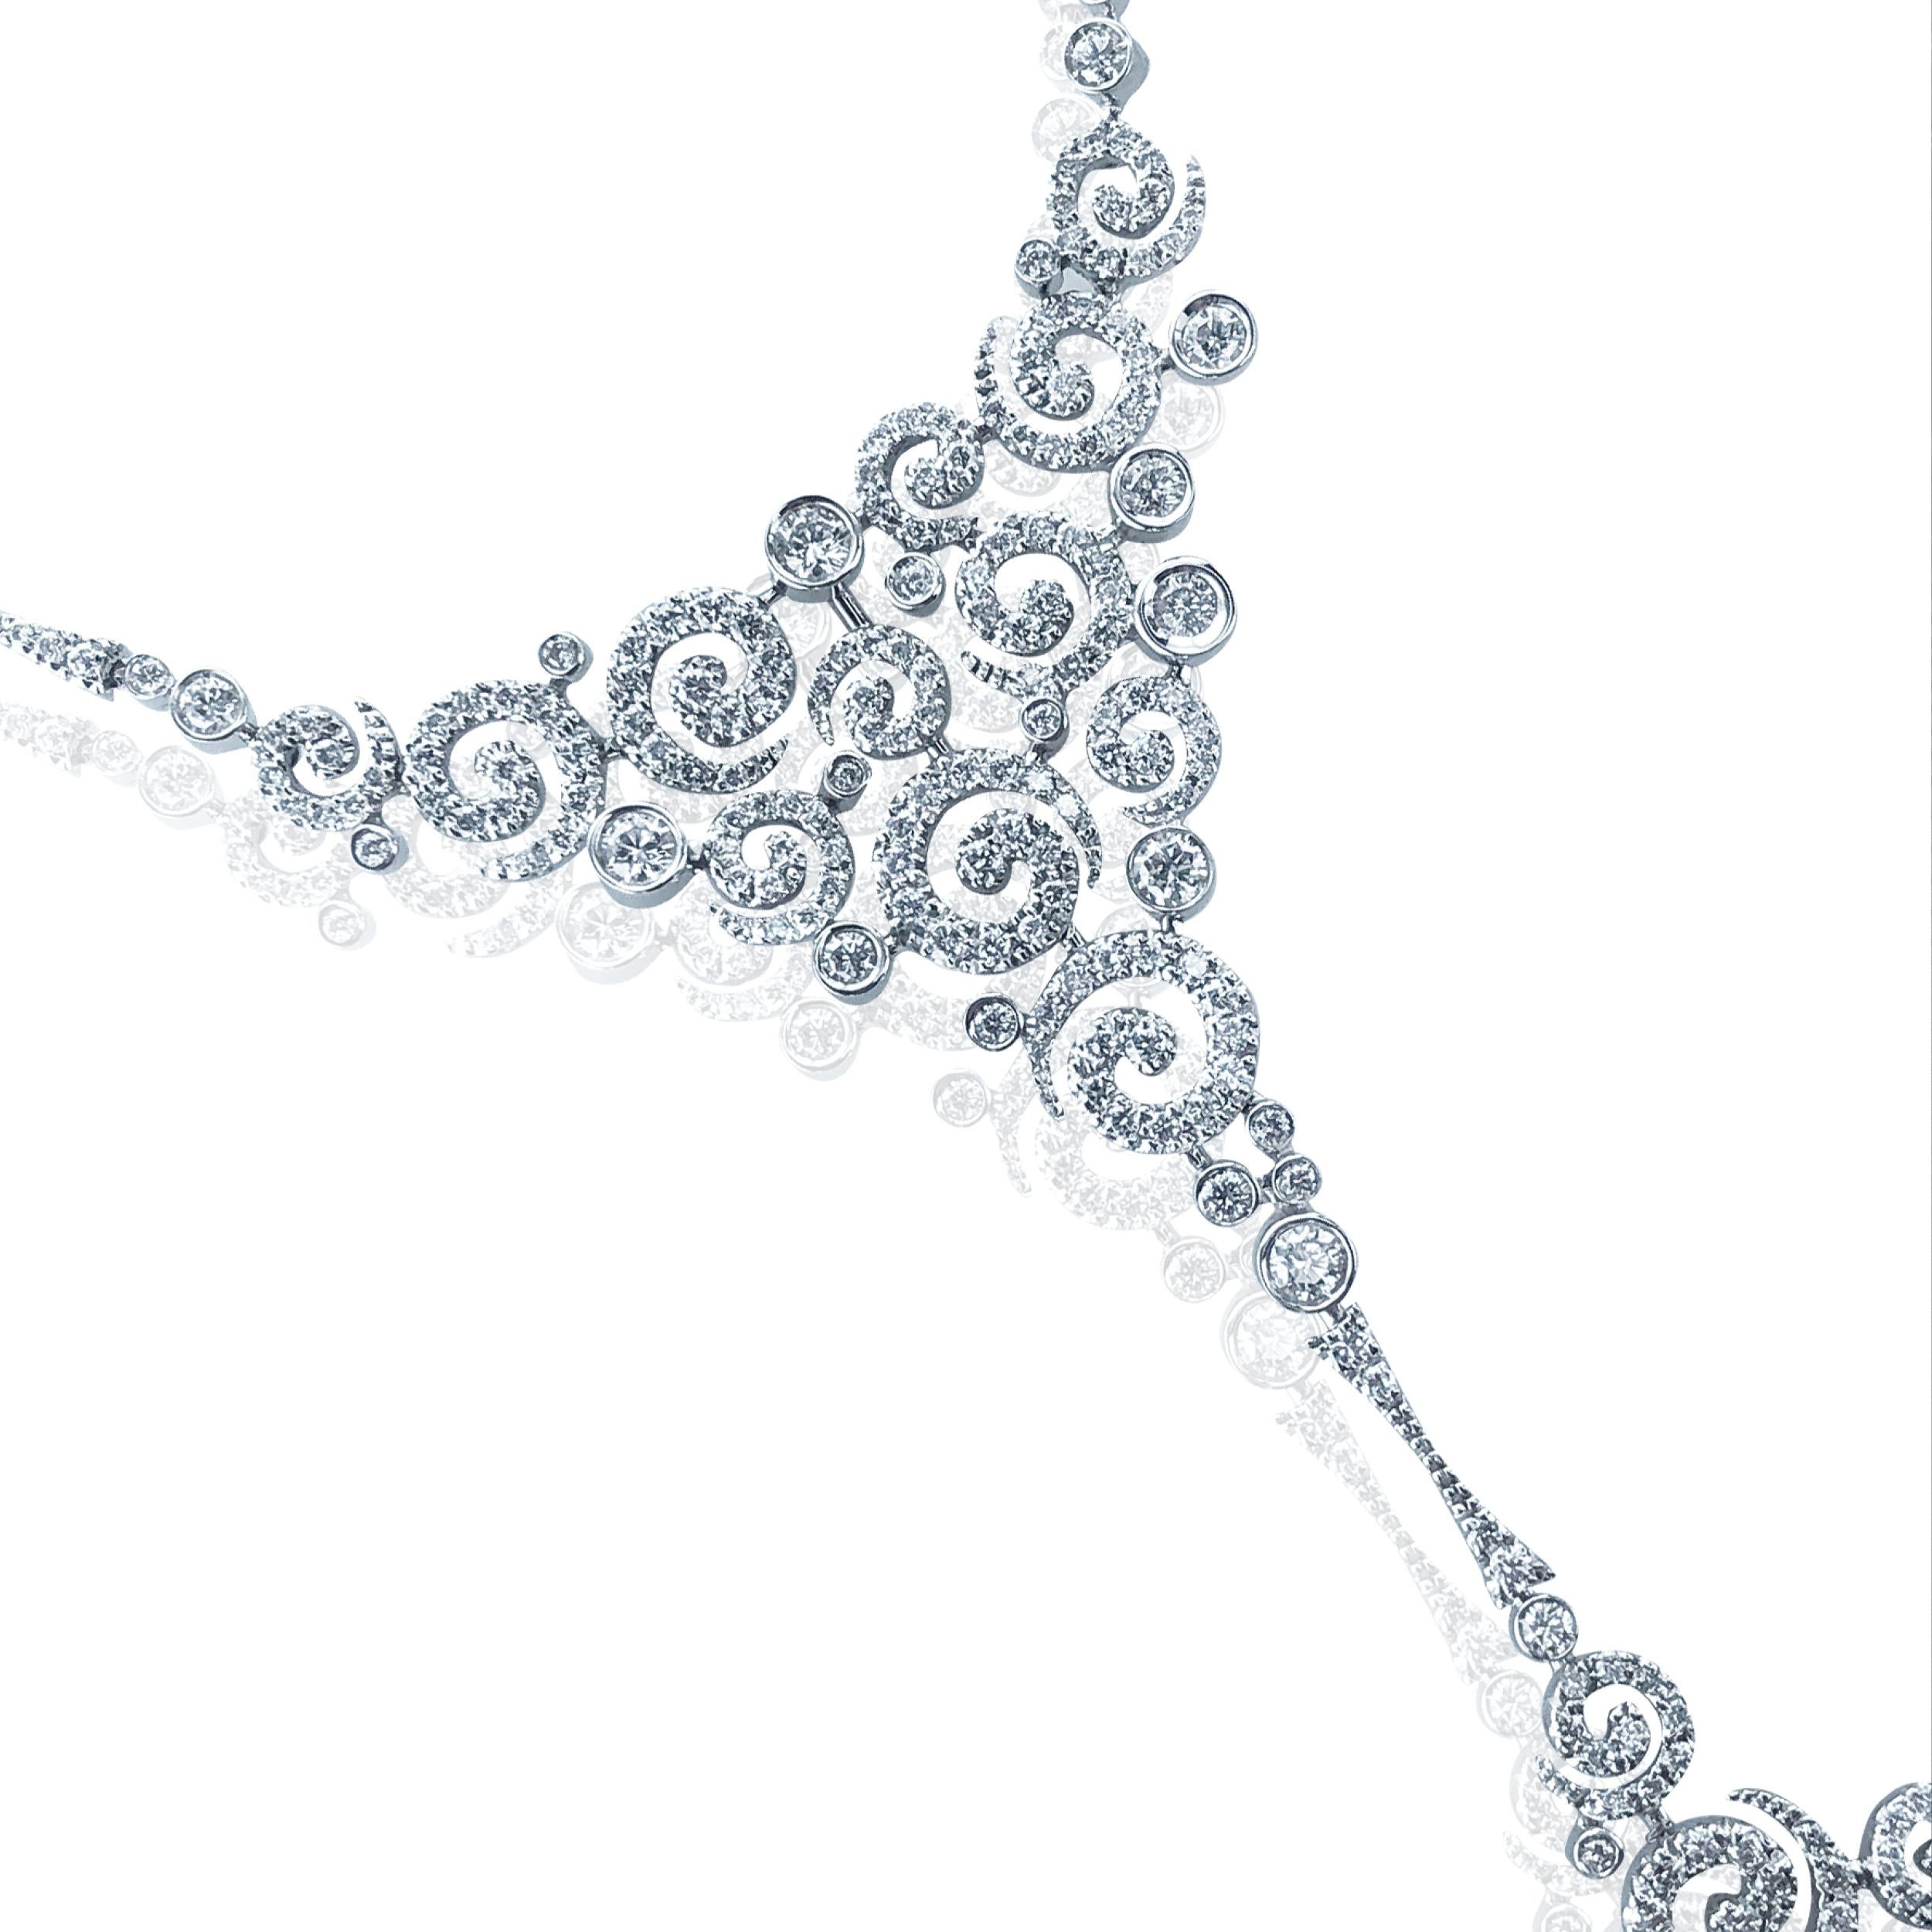 Dieser Diamant 3,00 Karat großen Wirbel Halskette, sitzt schön auf einem 18kt Weißgold Kabelkette. 

Mit einem festen Mittelstück aus mehreren Diamantwirbeln, das zu einer baumelnden, quadratischen Kollektion von Wirbeln hinunterführt. 

Ein